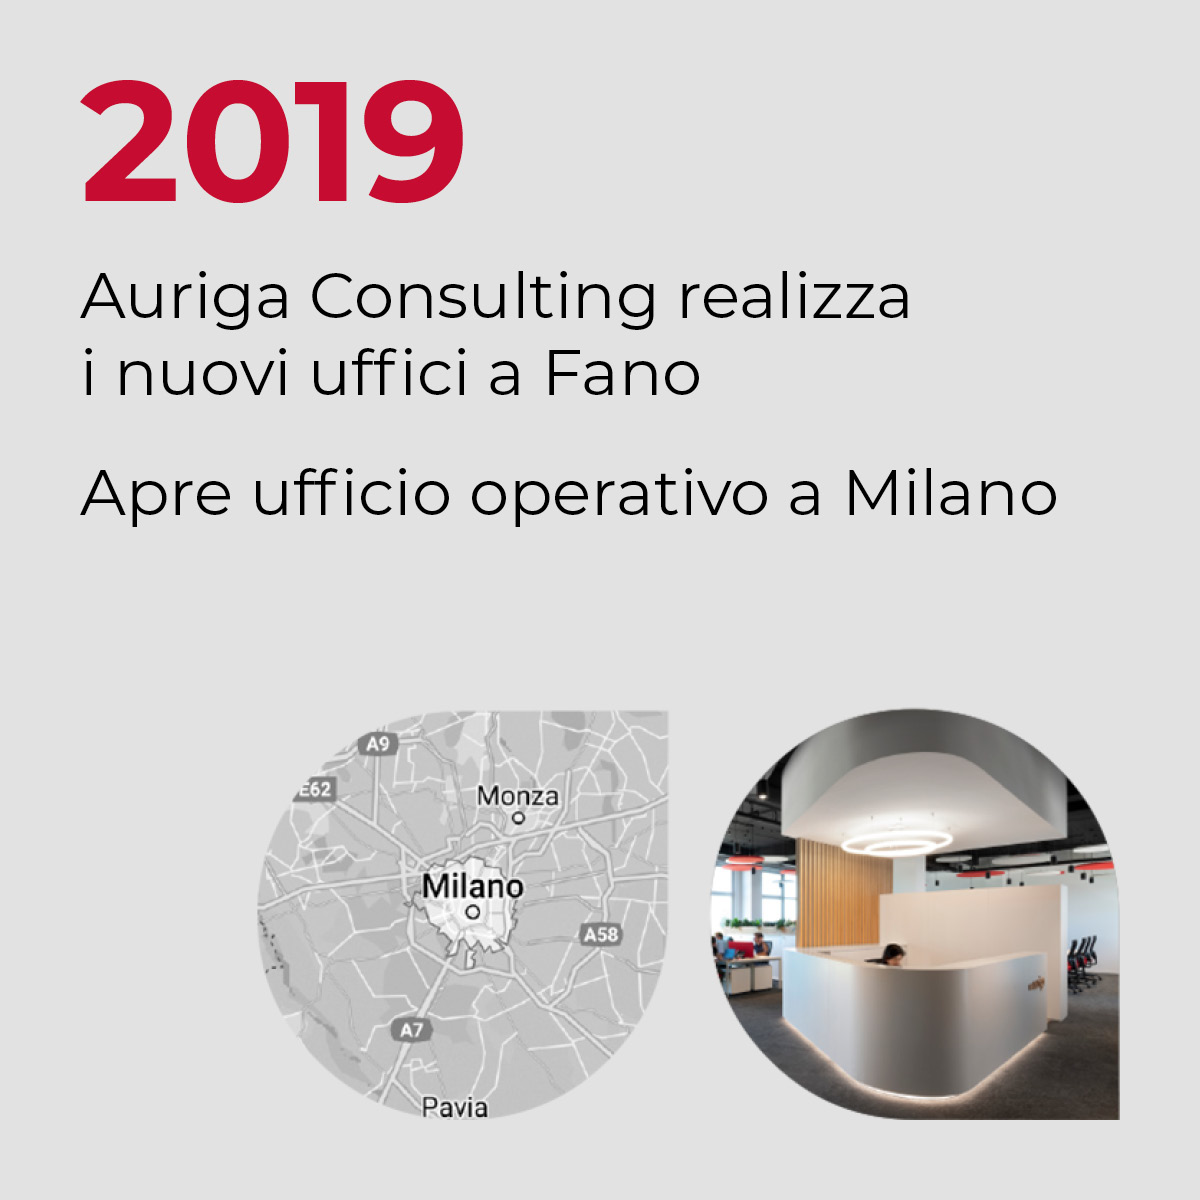 2019, Auriga Consulting realizza i nuovi uffici a Fano, Apre ufficio operativo a Milano